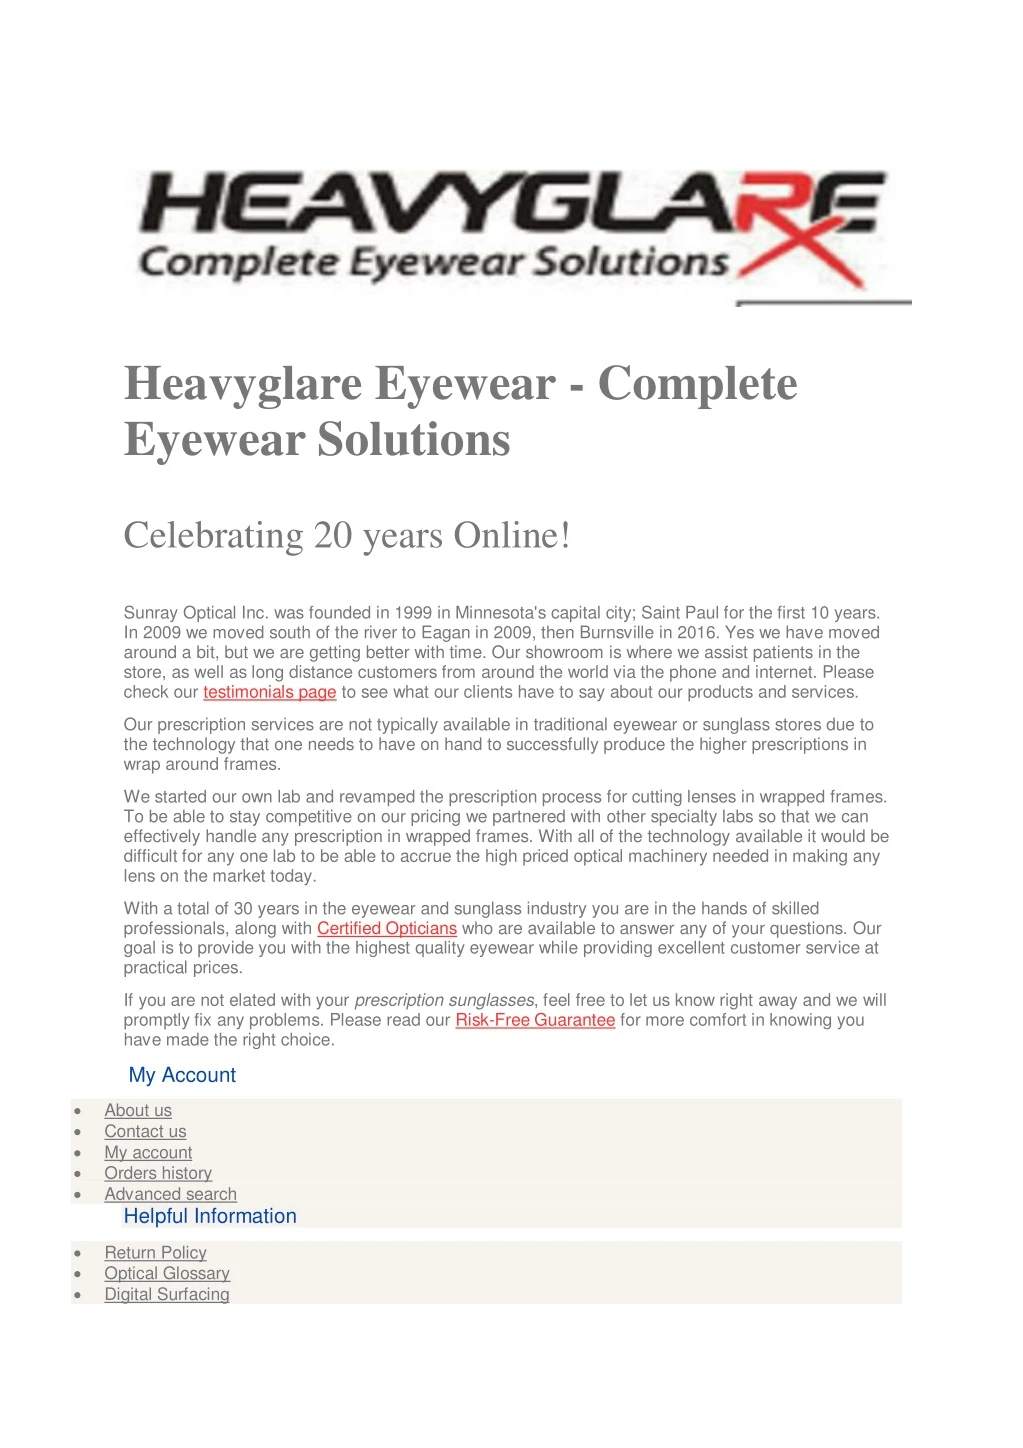 heavyglare eyewear complete eyewear solutions